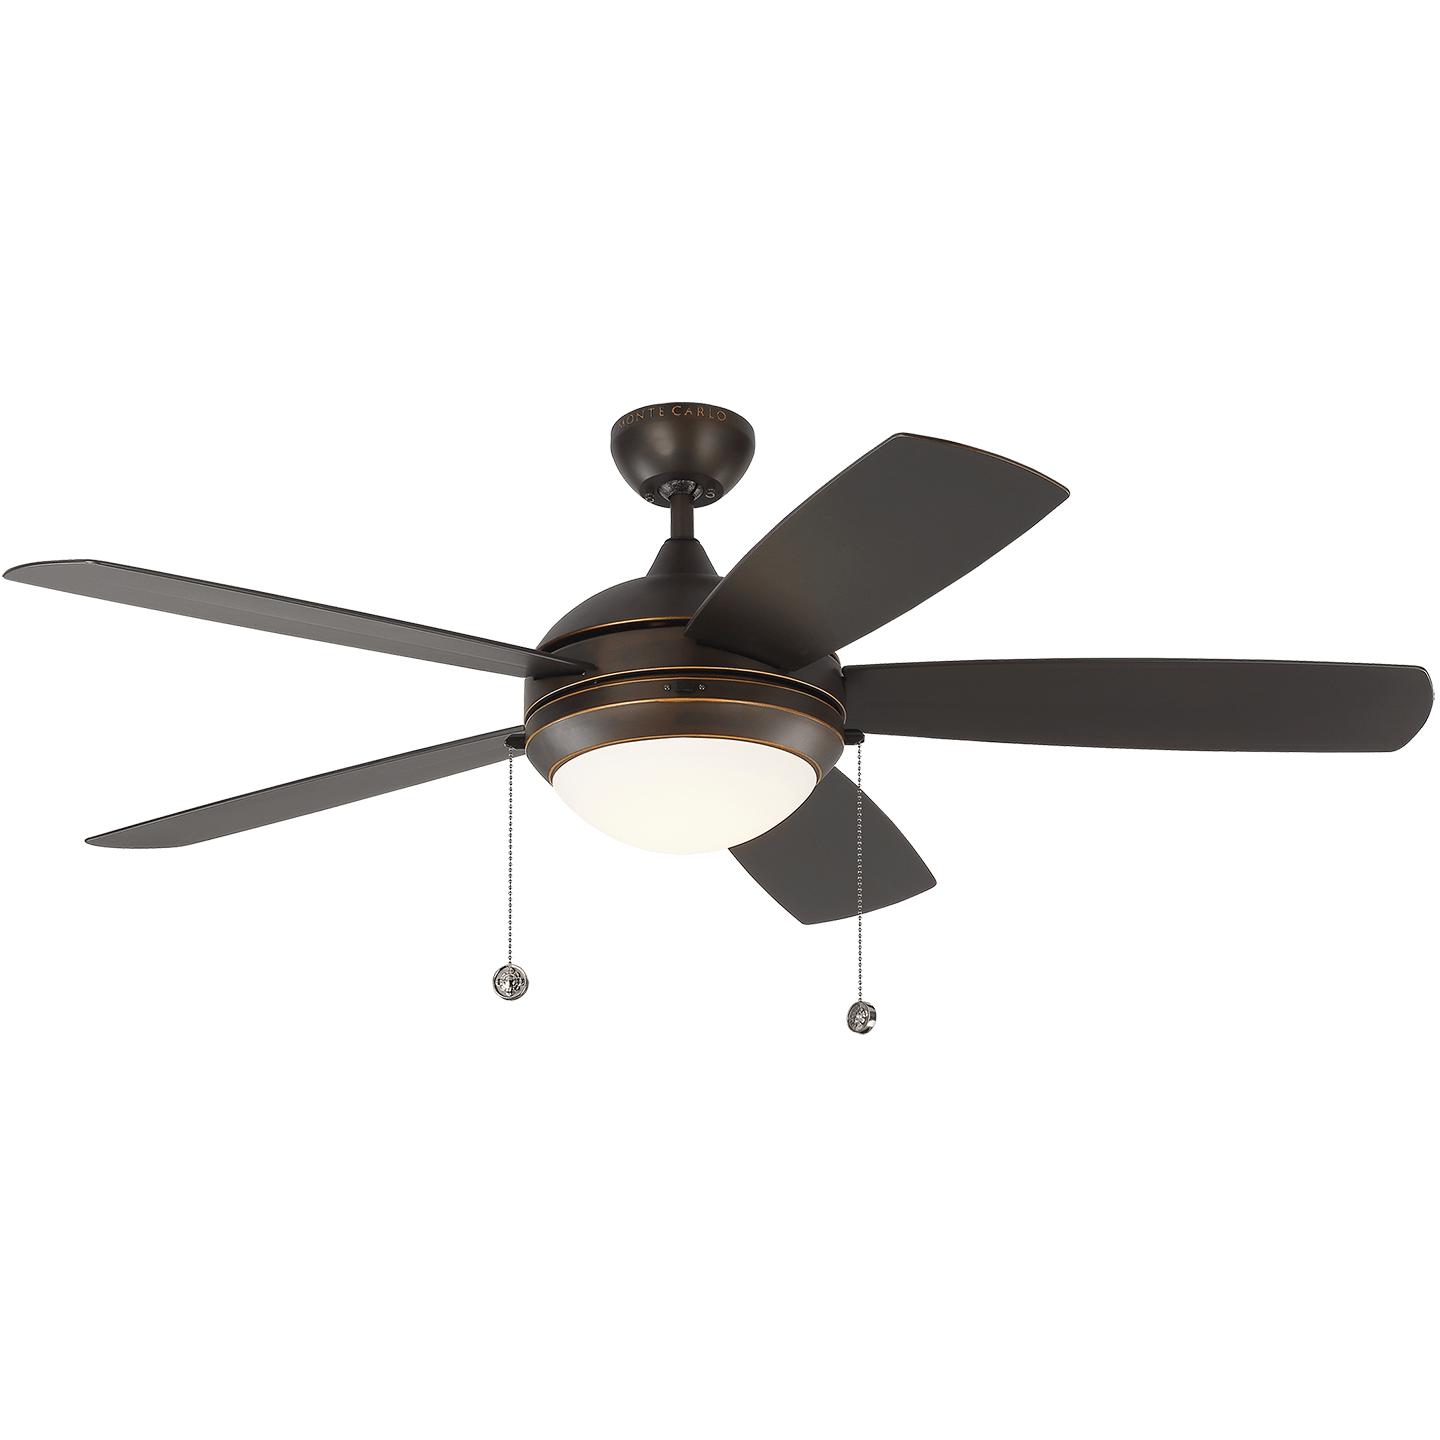 Купить Потолочный вентилятор Discus 52" LED Outdoor Ceiling Fan в интернет-магазине roooms.ru